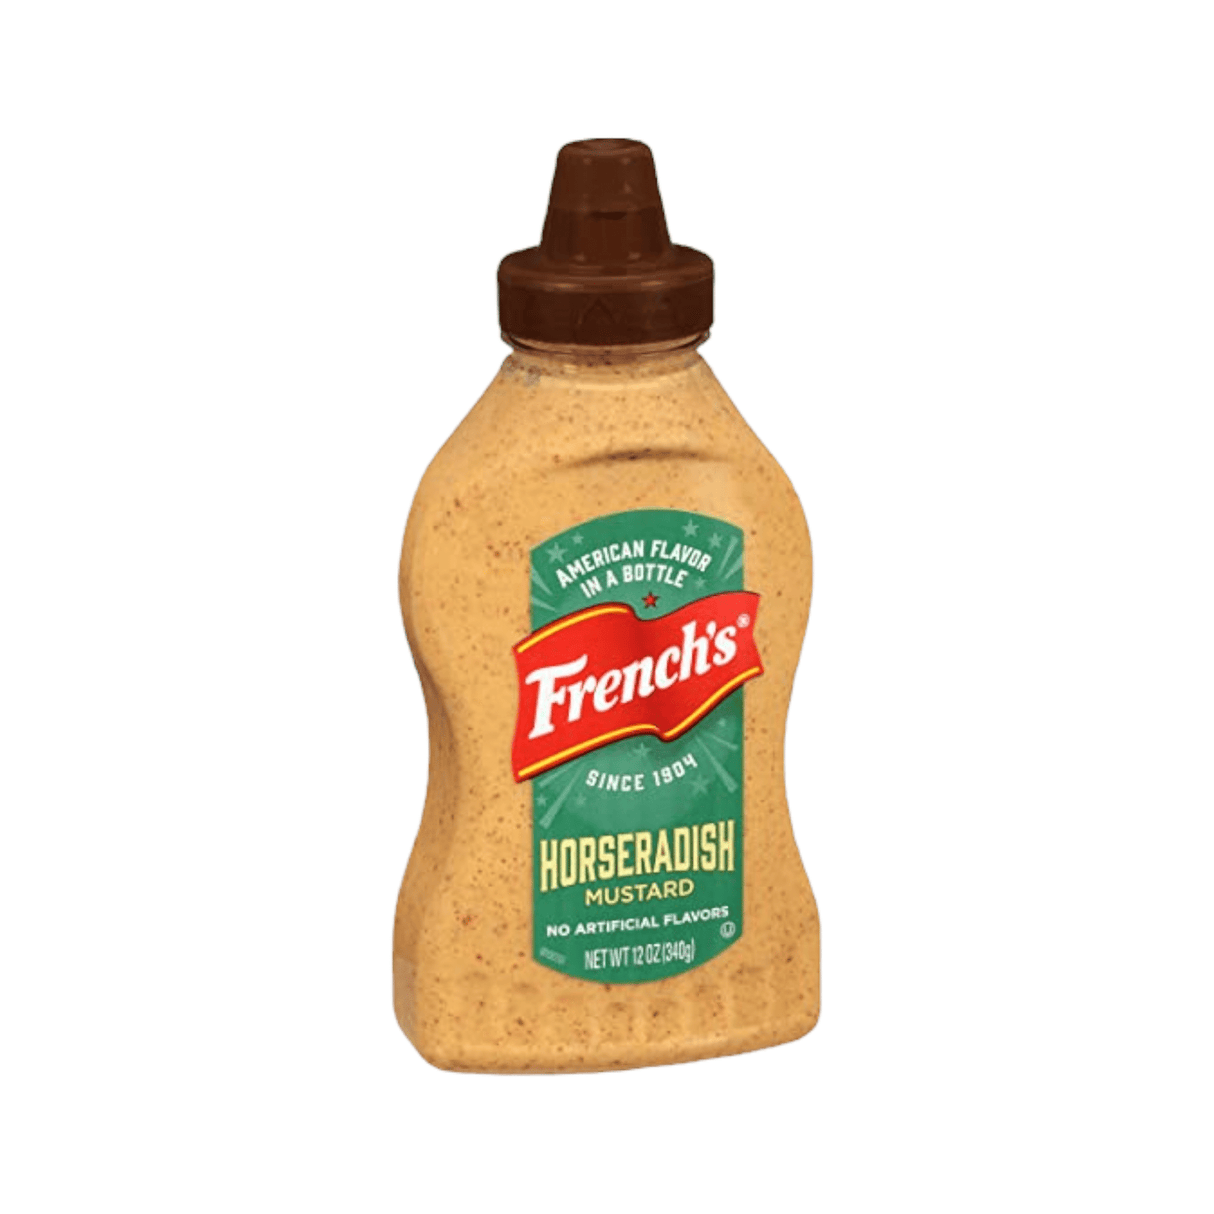 French’s Horseradish Mustard